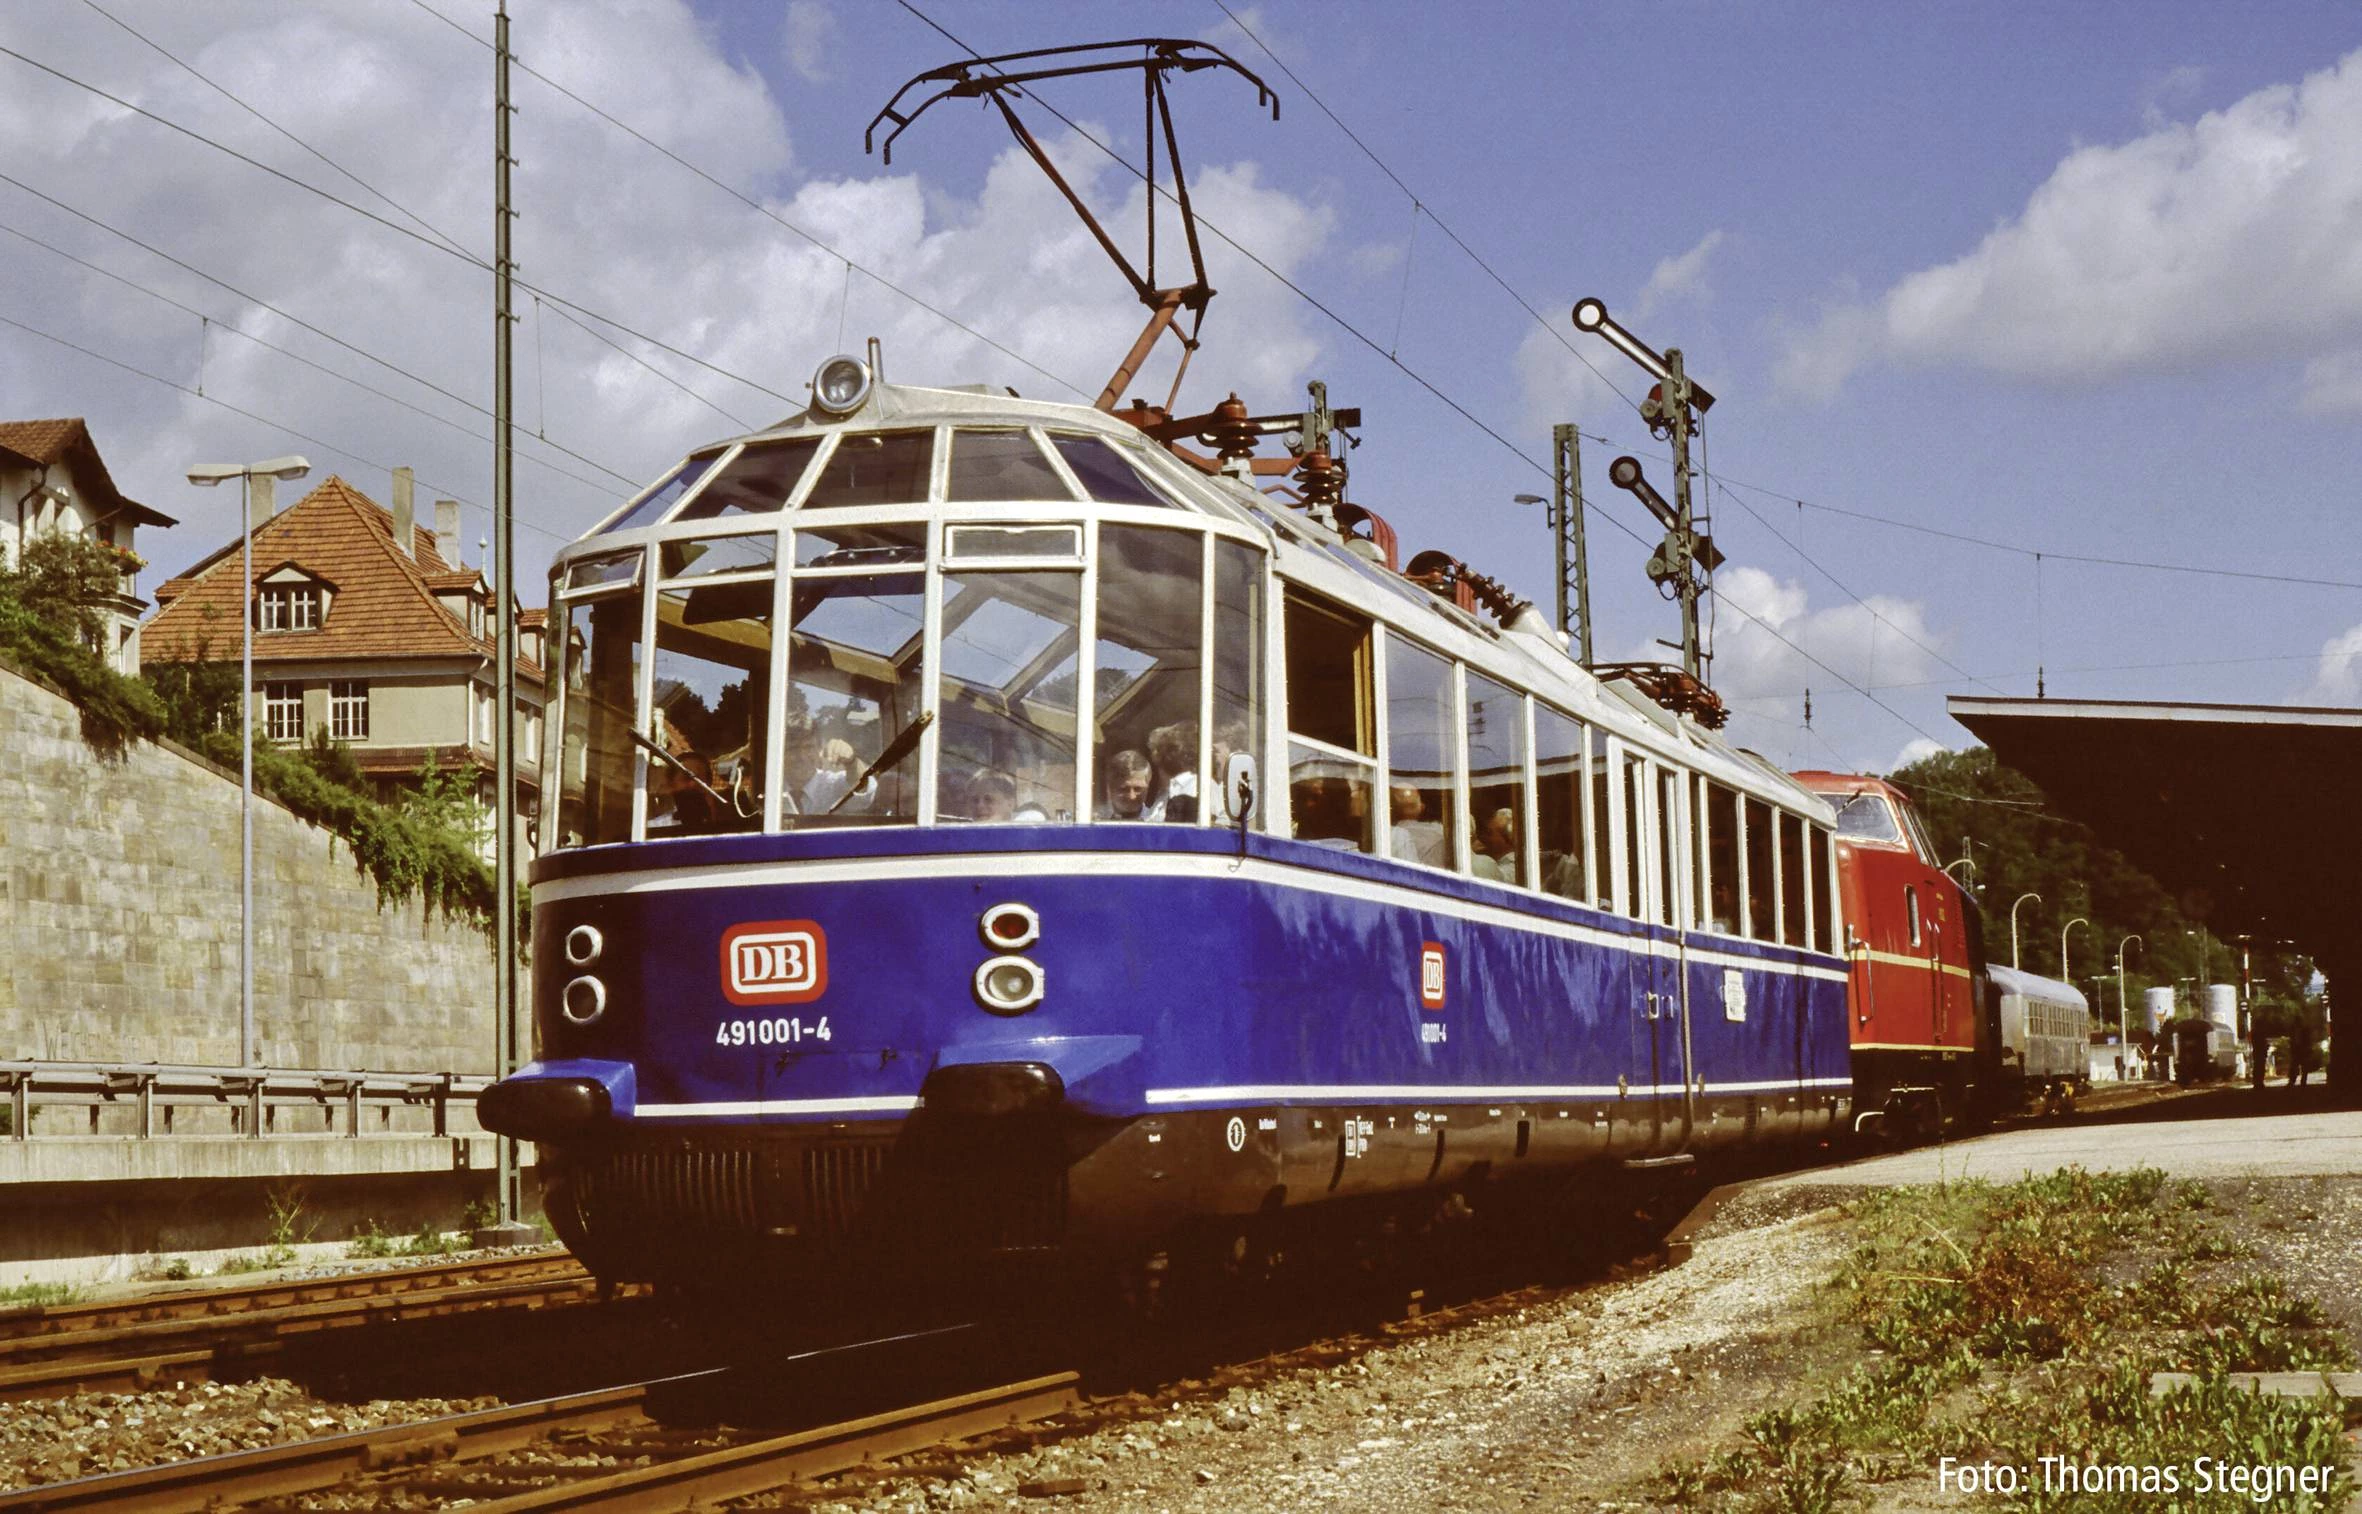 PIKO 37330 G Elektrotriebzug "Gläserner Zug" der DB 